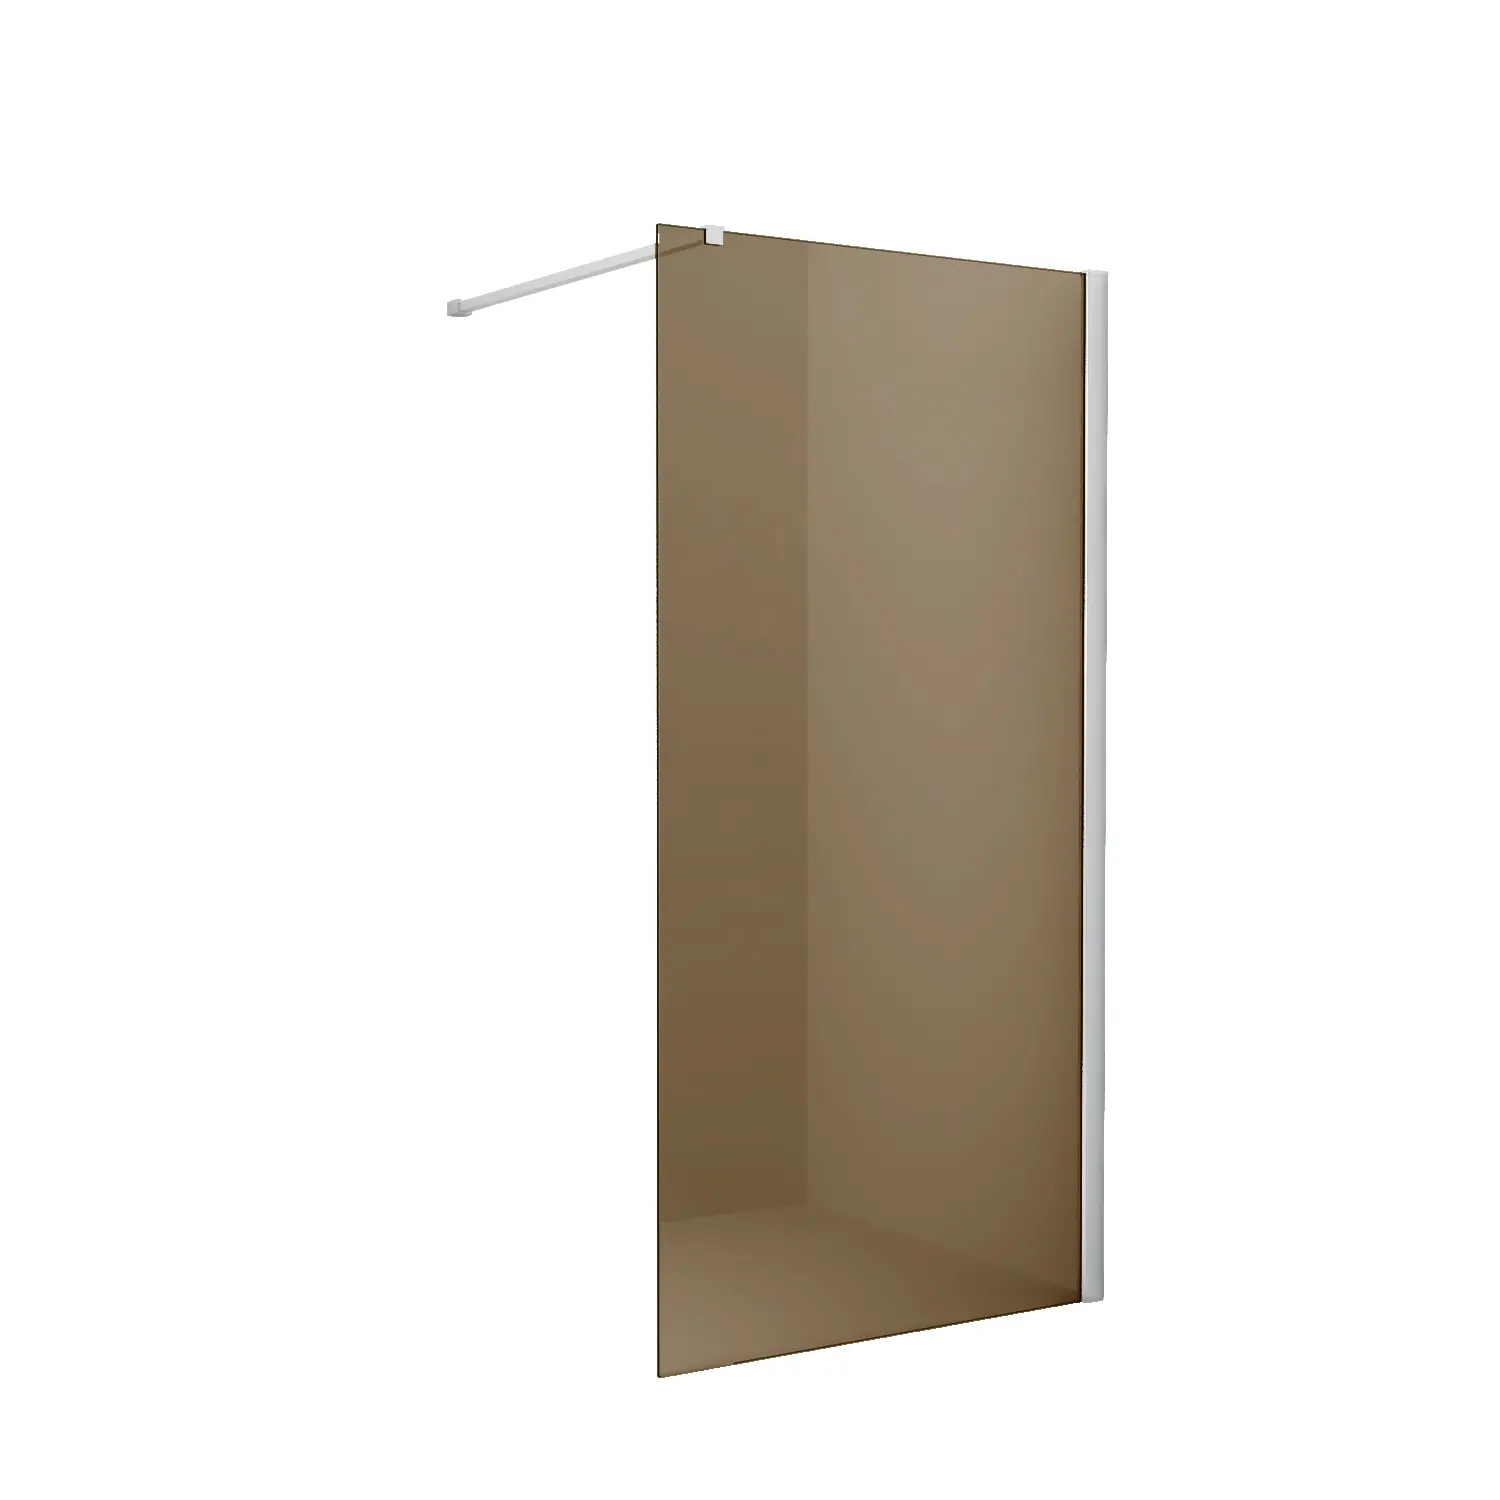 O preço de fábrica de alta qualidade do design normal da europa personalizado sem moldura vidro seguro caminhada na sala de chuveiro, tela do chuveiro